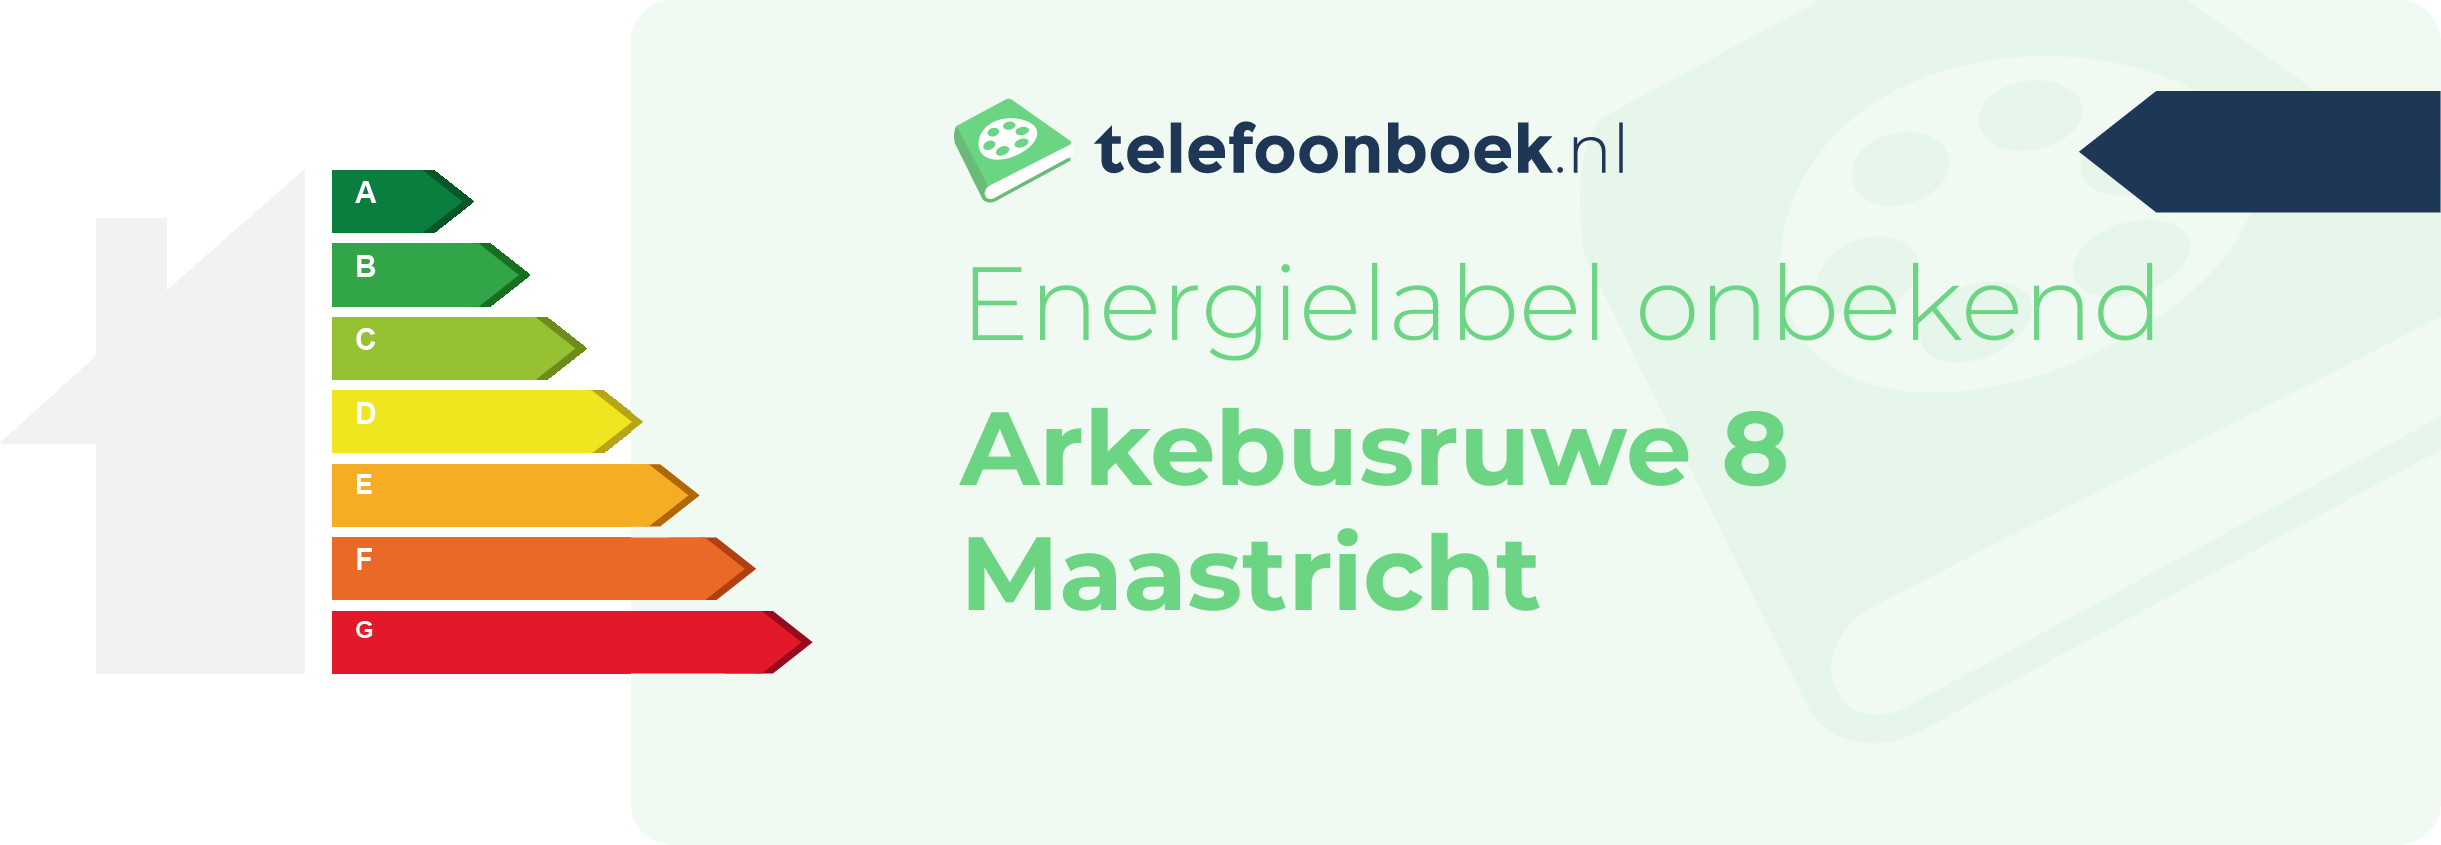 Energielabel Arkebusruwe 8 Maastricht